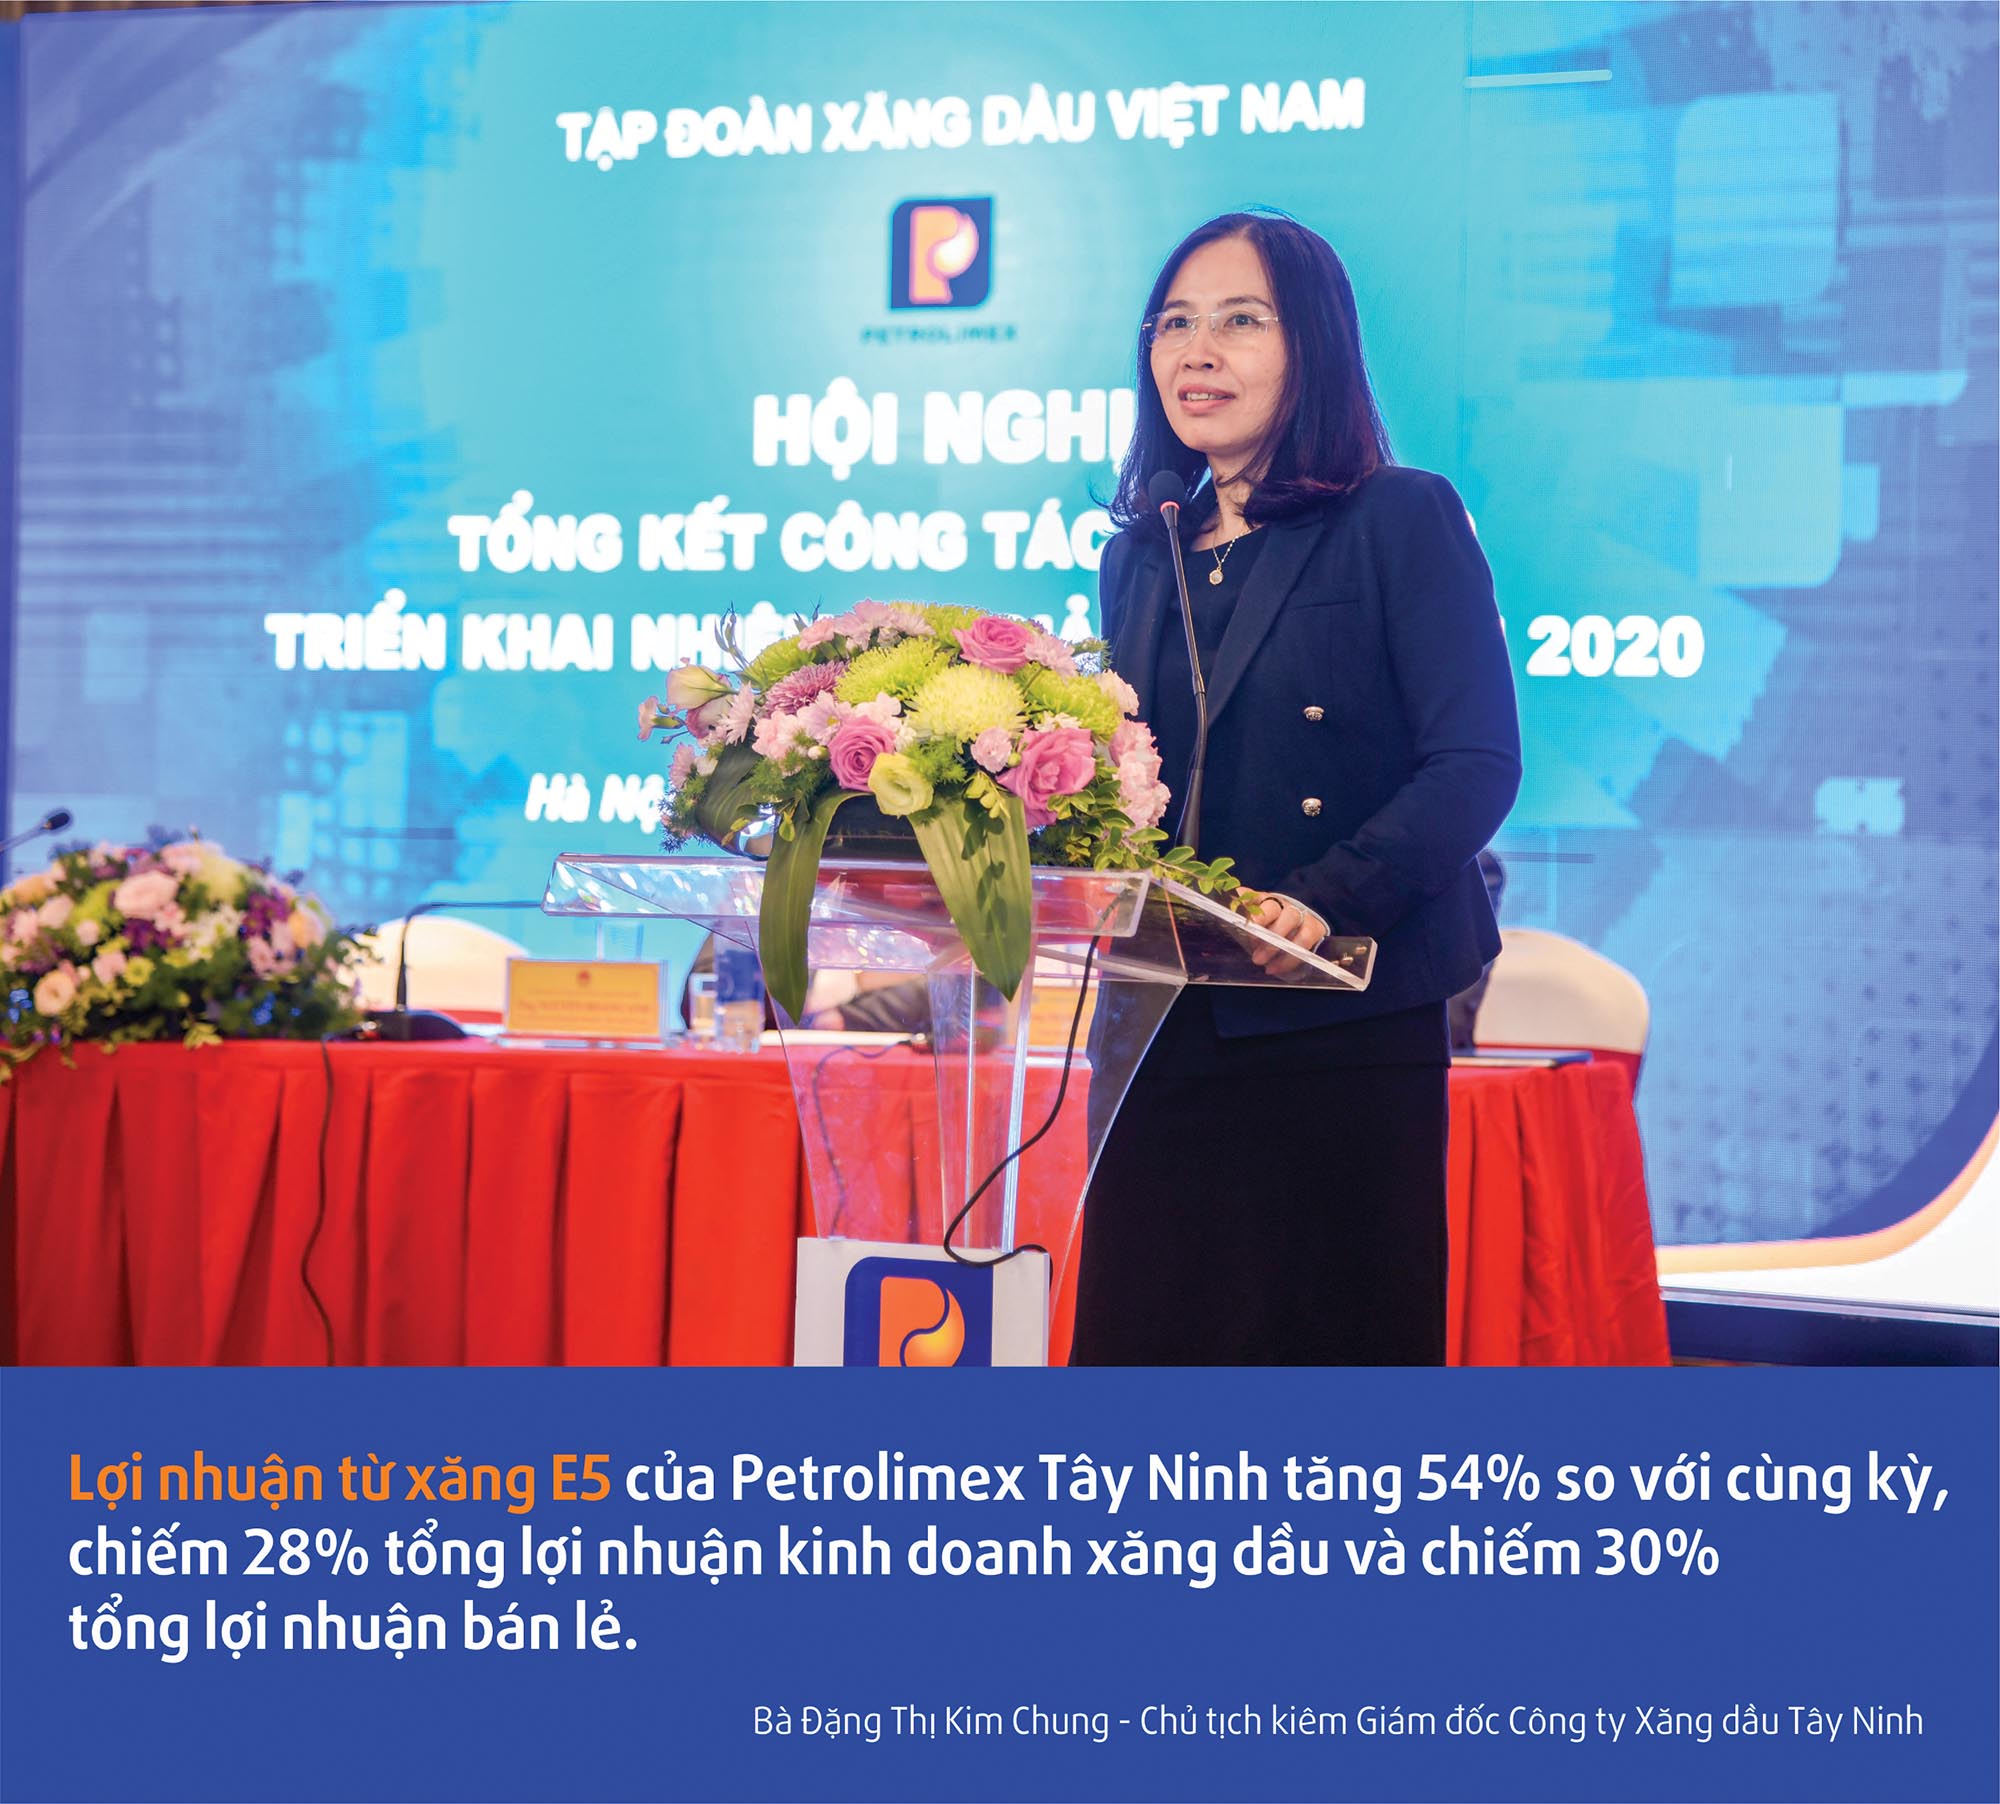 Bà Đặng Thị Kim Chung - Chủ tịch kiêm Giám đốc Công ty Xăng dầu Tây Ninh